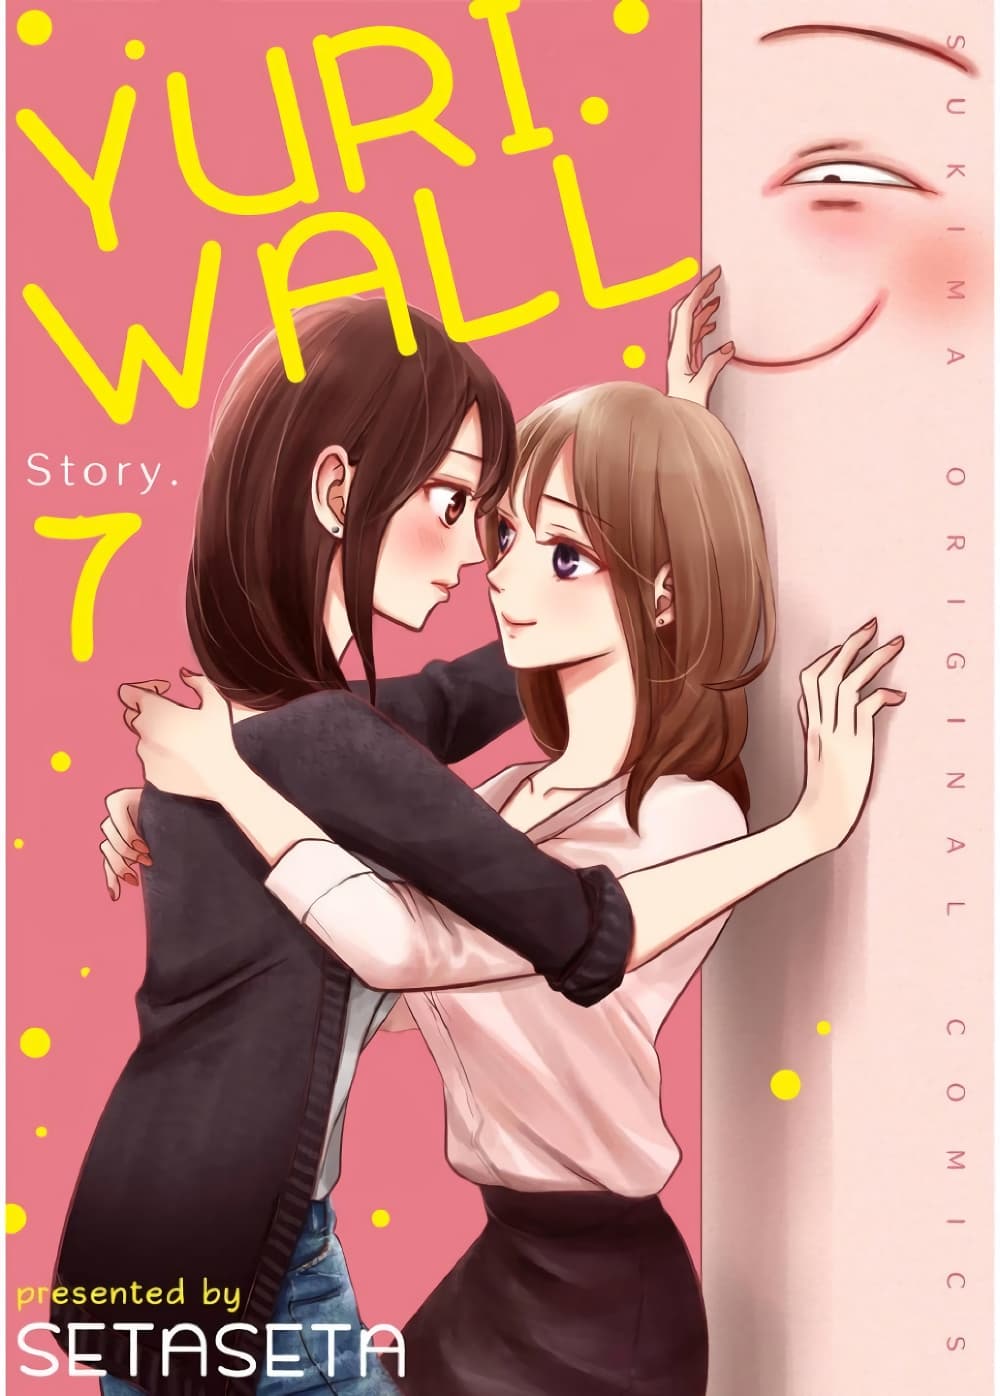 Yuri Wall 7 (1)